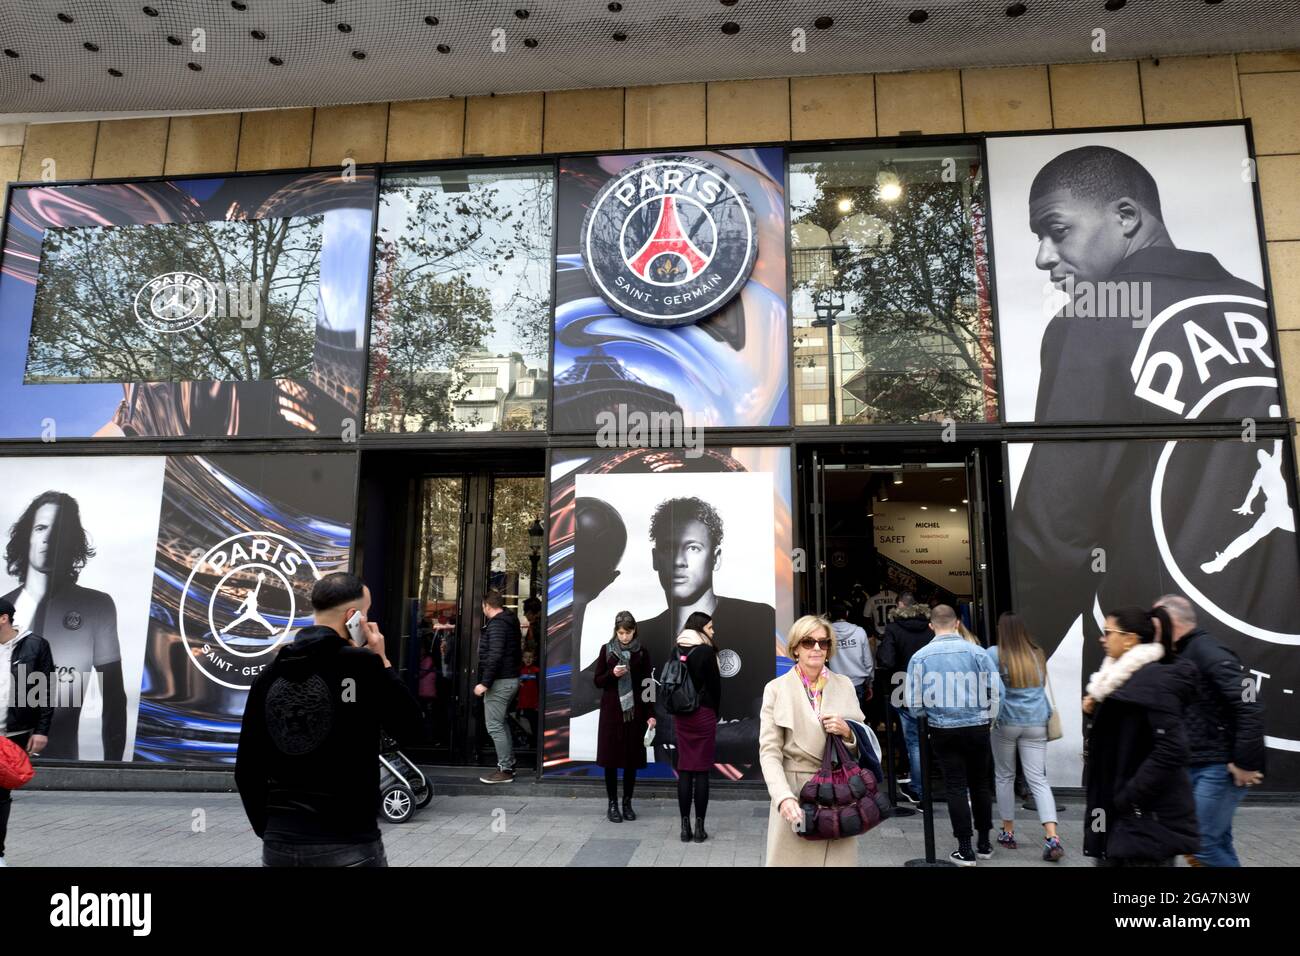 Negozio ufficiale della squadra di calcio Paris Saint Germain sugli Champs Elysees, a Parigi Foto Stock